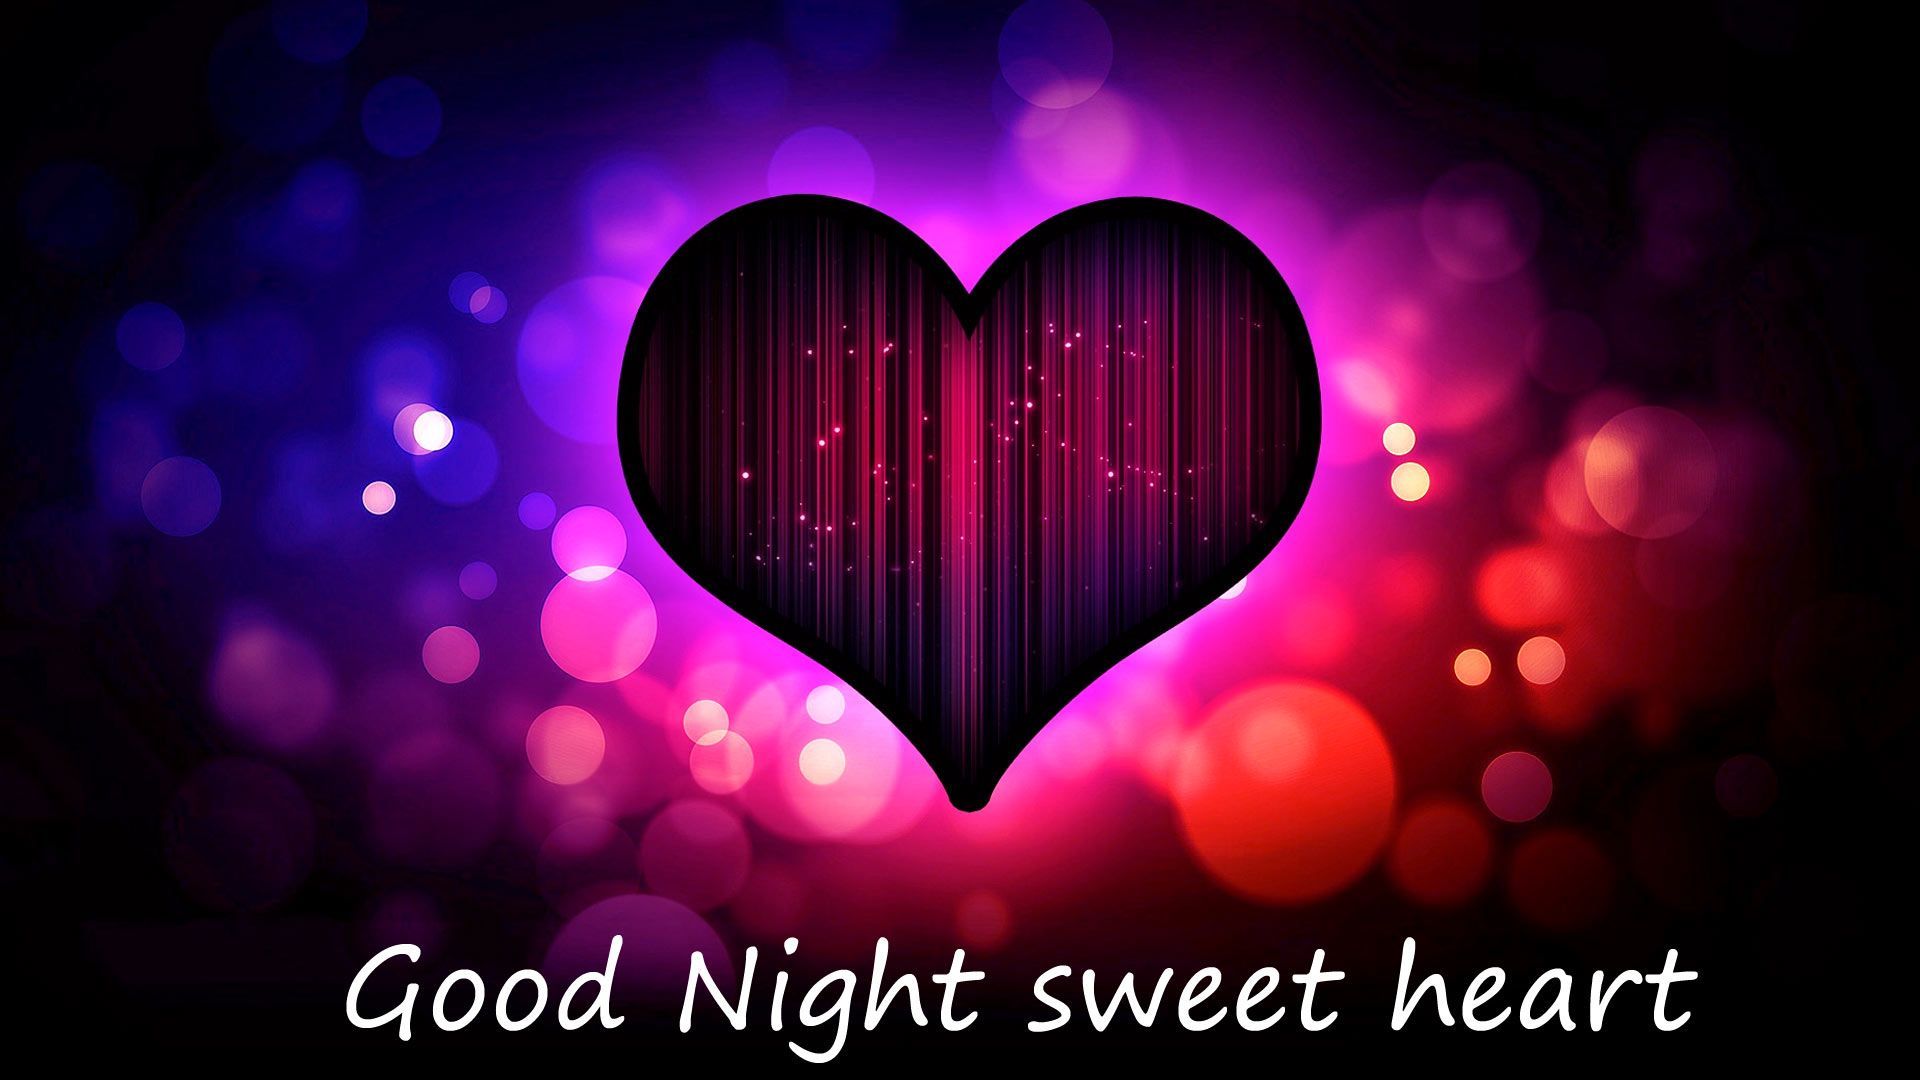 Good Night sweet love heart wallpaper HD for desktop - HDWallpicx.com